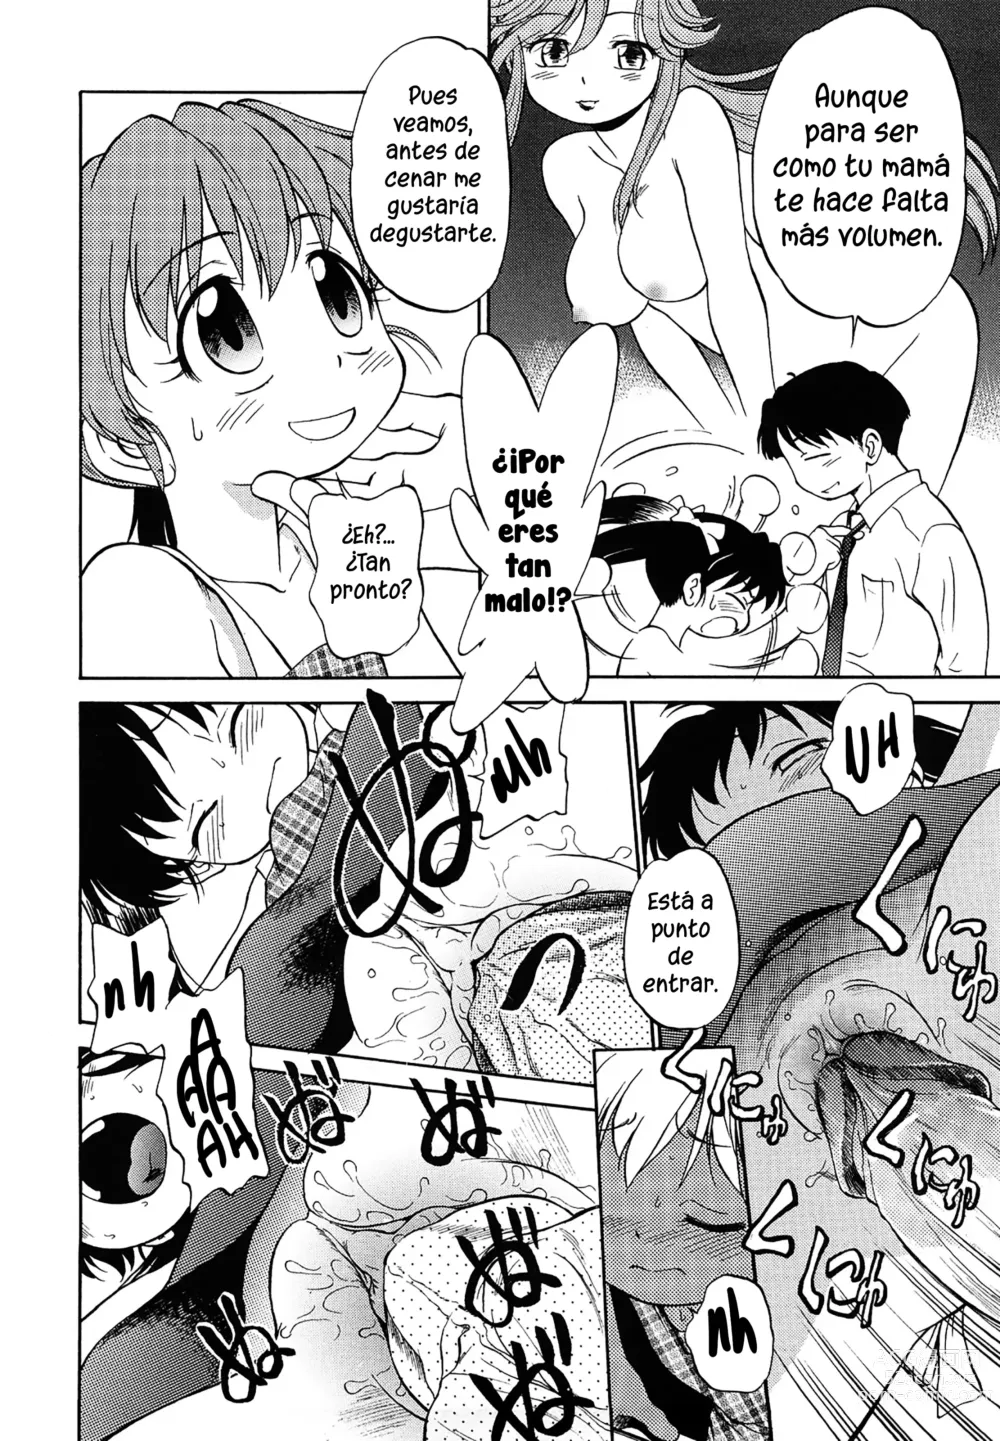 Page 4 of manga Mamá es increíble